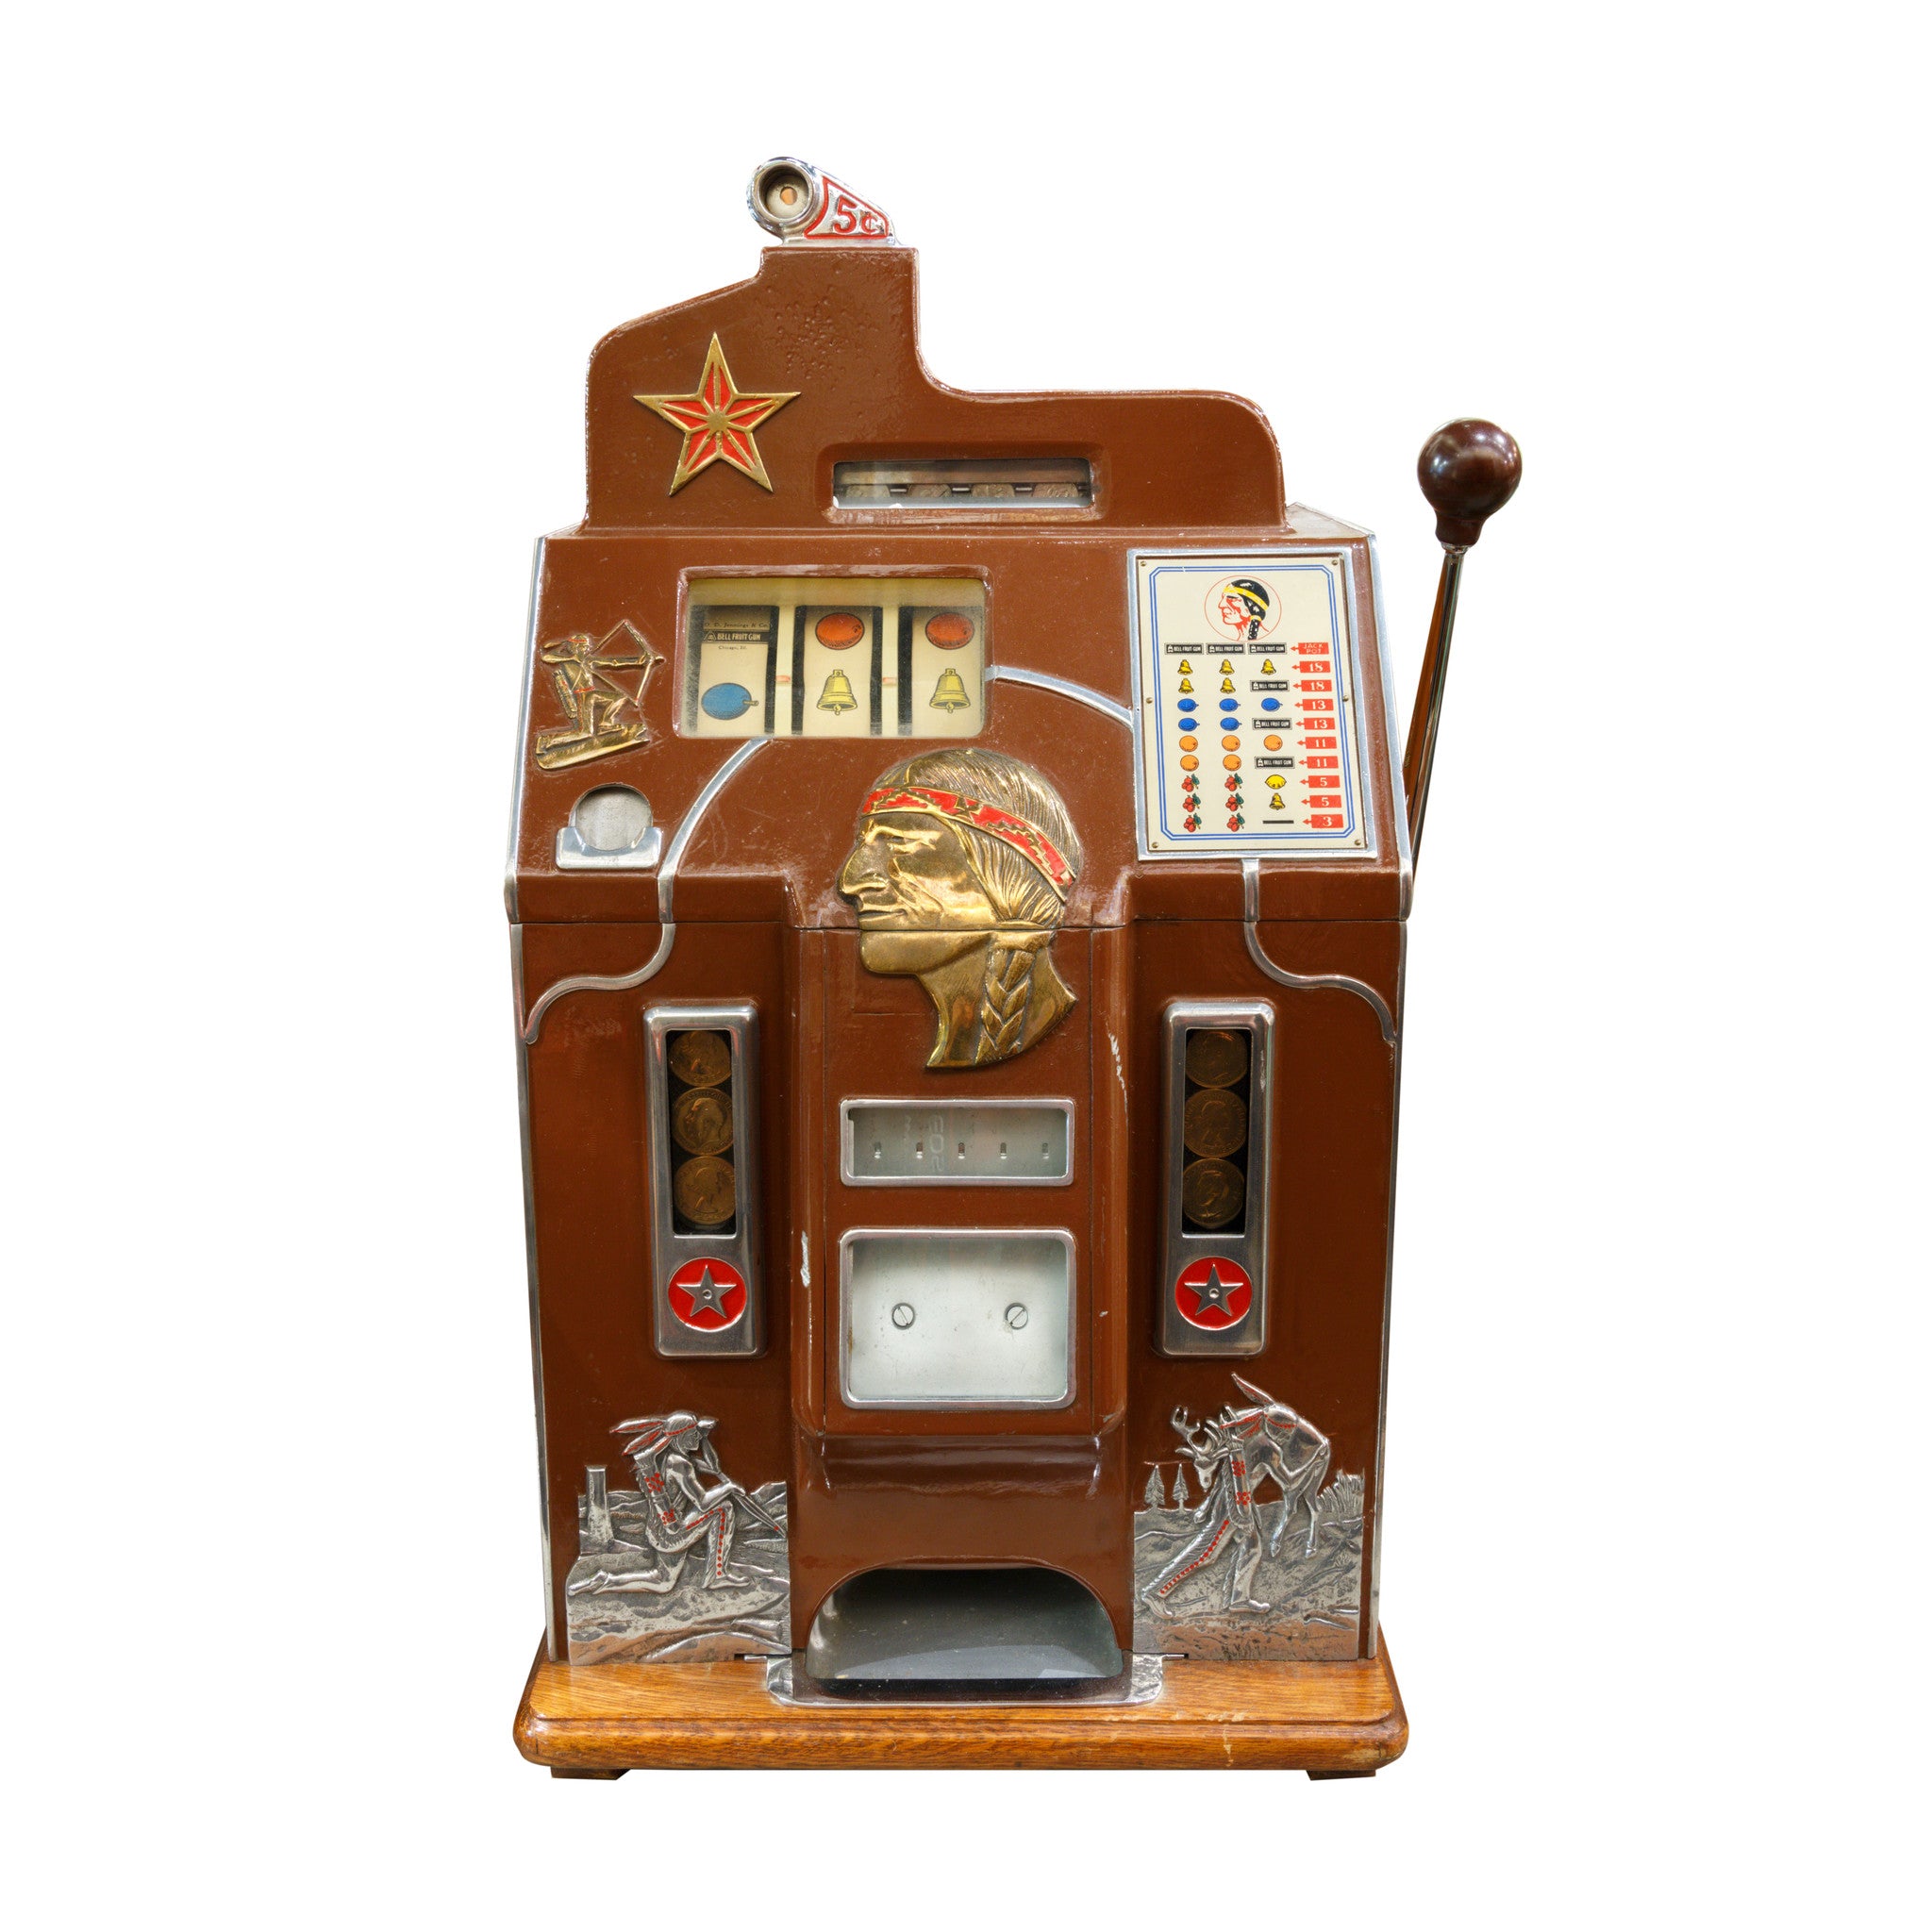 Jennings Star Slot Machine, Western, Gaming, Gambling Wheel